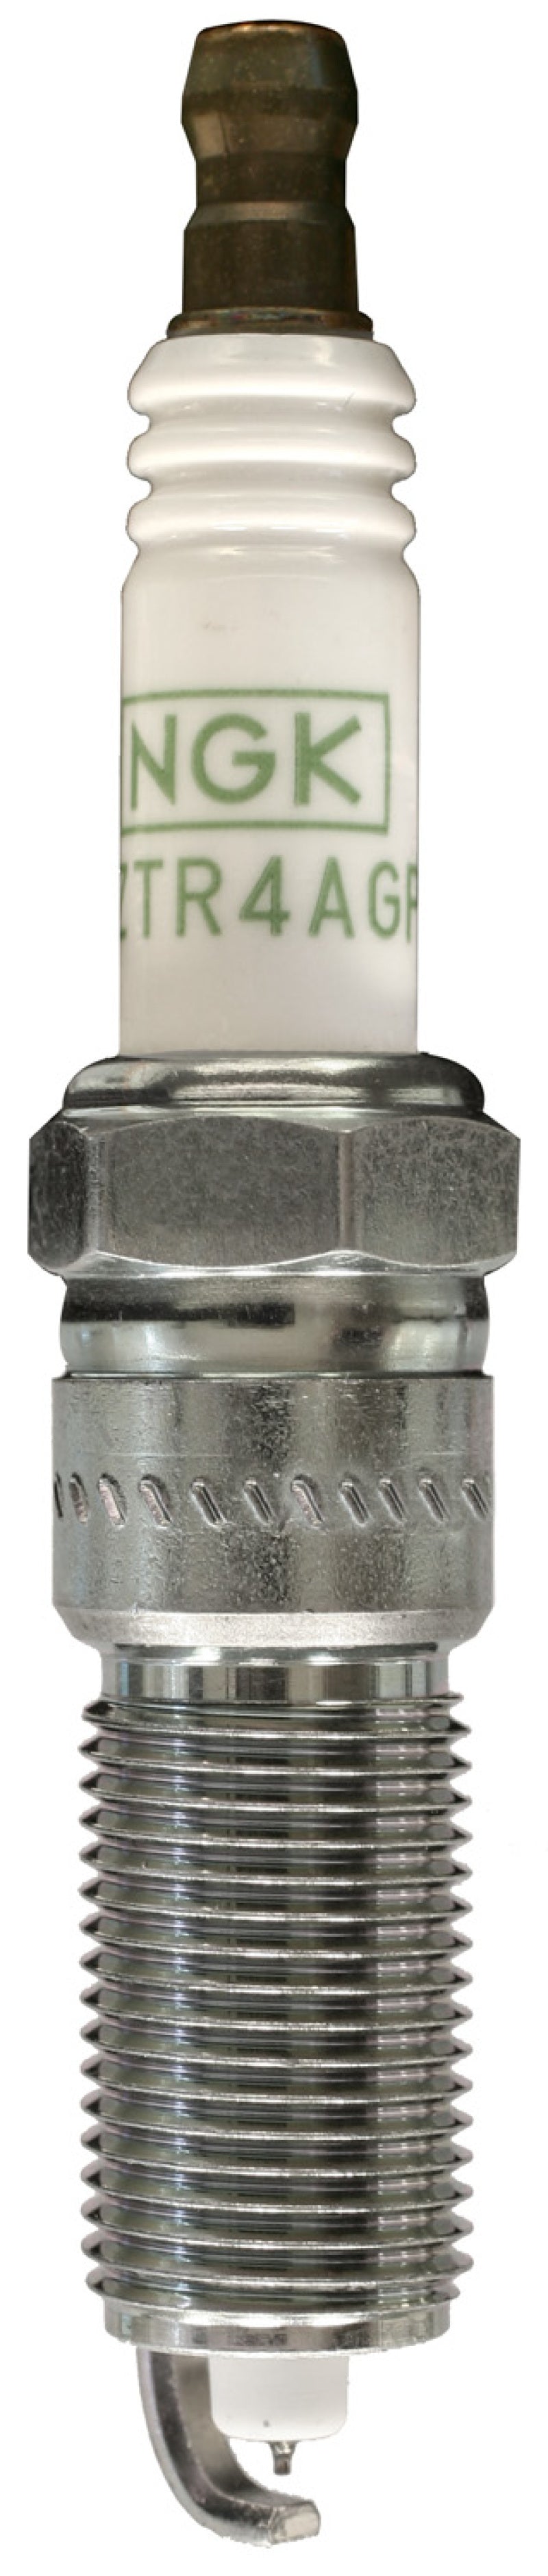 NGK Platinum Spark Plug Box of 4 (LZTR5AGP)